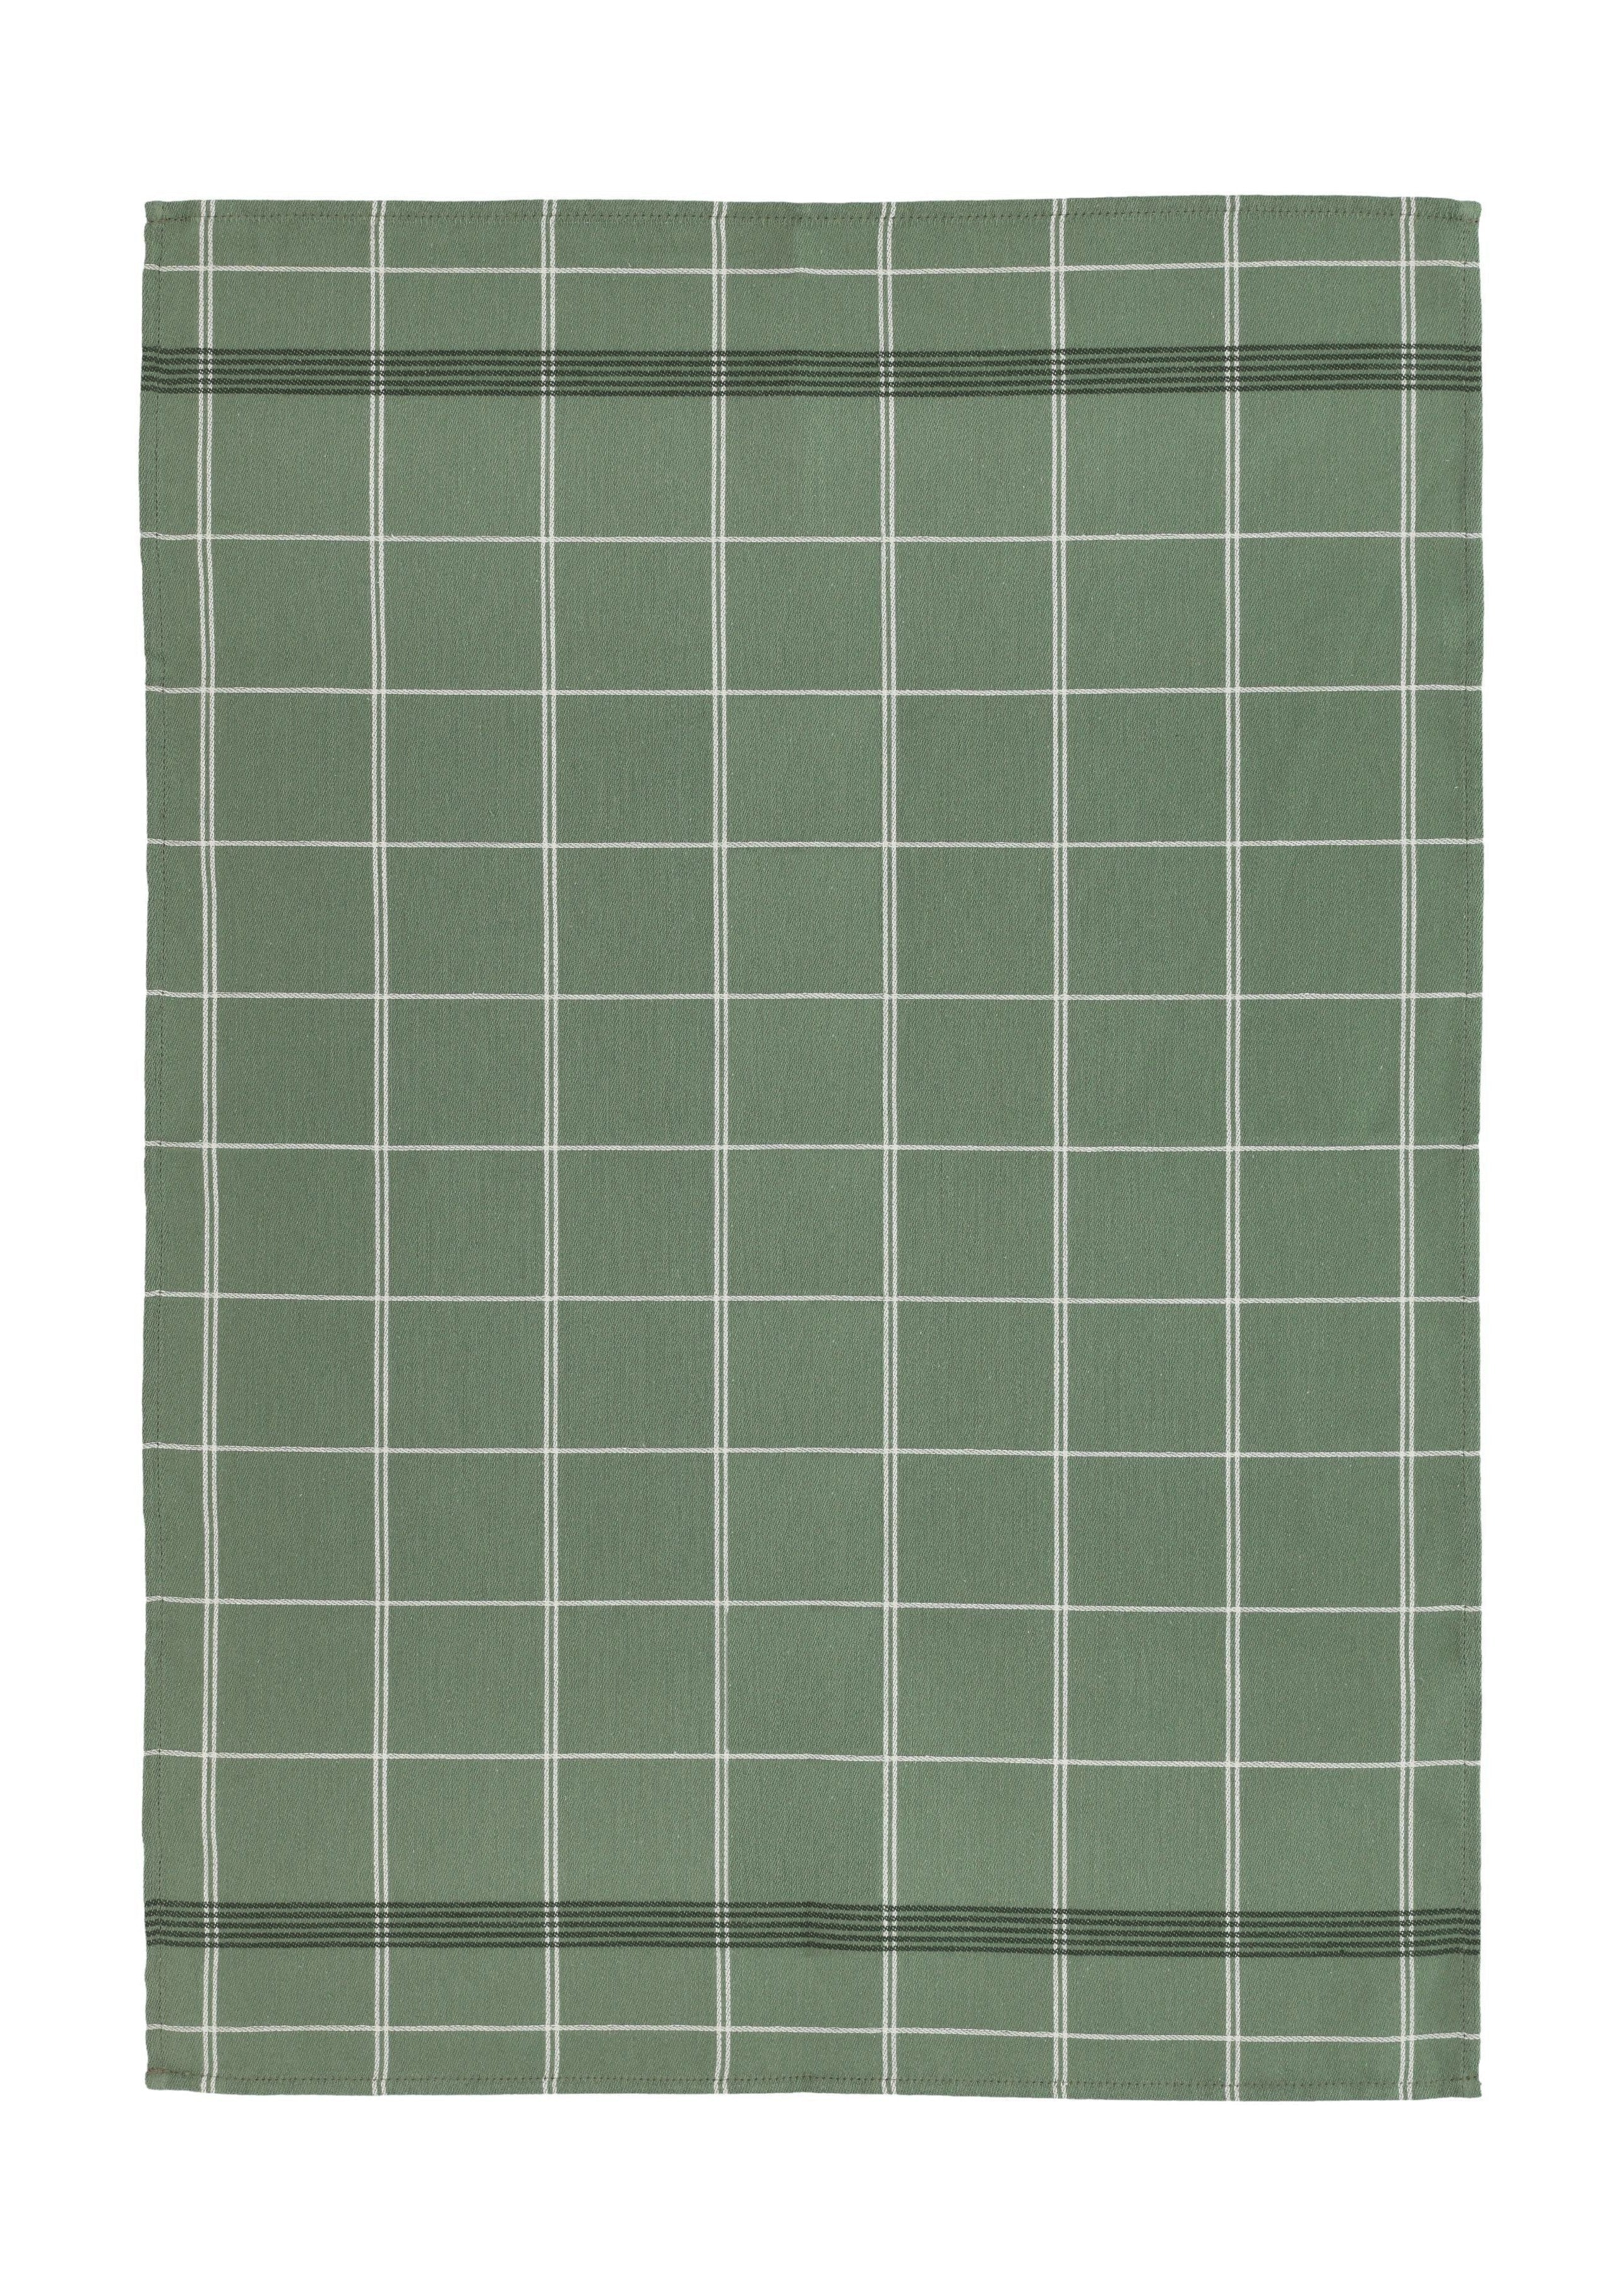 Södahl Minimal handduk 50 x 70 cm, grön